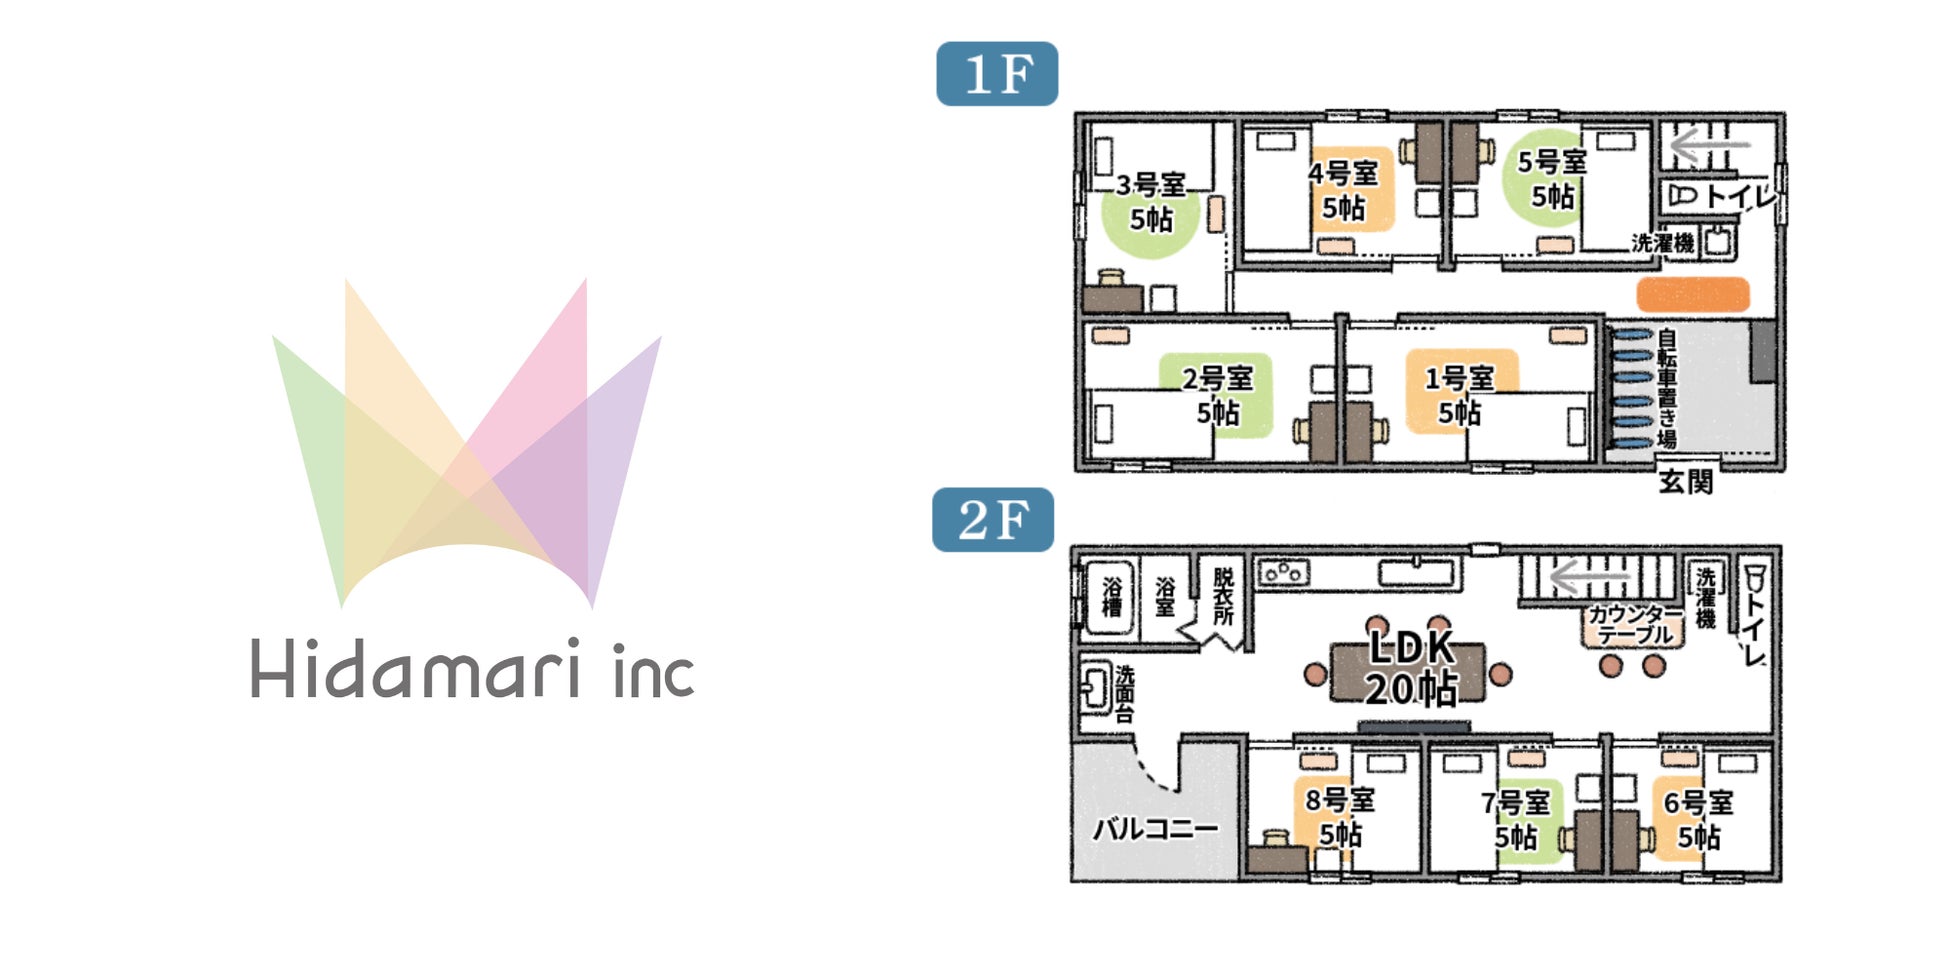 奈良県でHidamari株式会社が新たなシェアハウスをオープン。自社では初となる奈良県にて空き家をリノベーションのサブ画像1